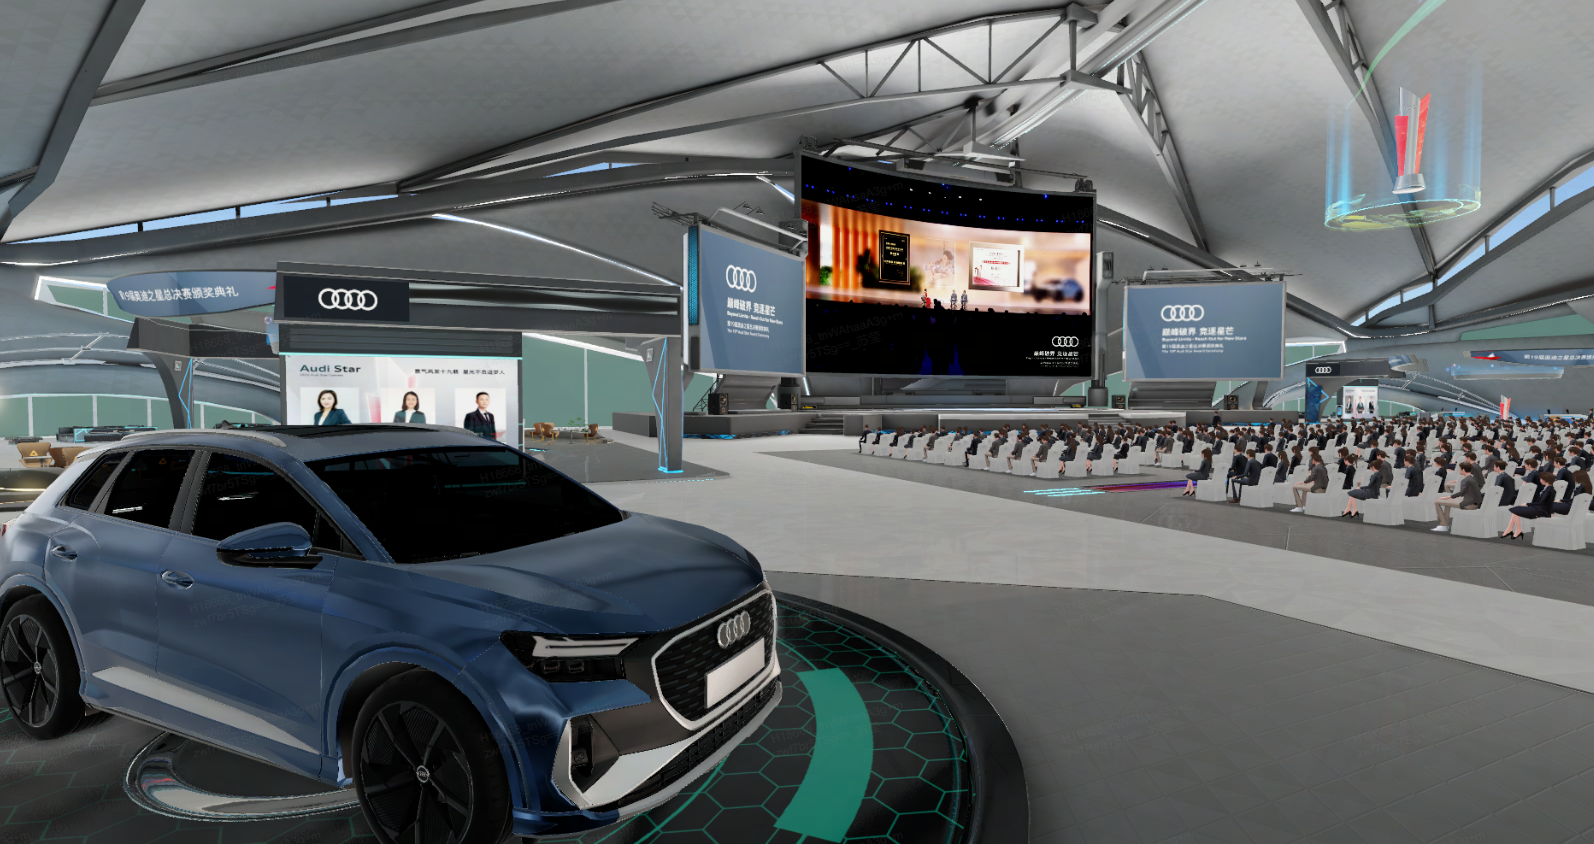 这是一张展示室内汽车展览的图片，中间展出一辆蓝色奥迪车，周围有座位和大屏幕，环境现代科技感强。